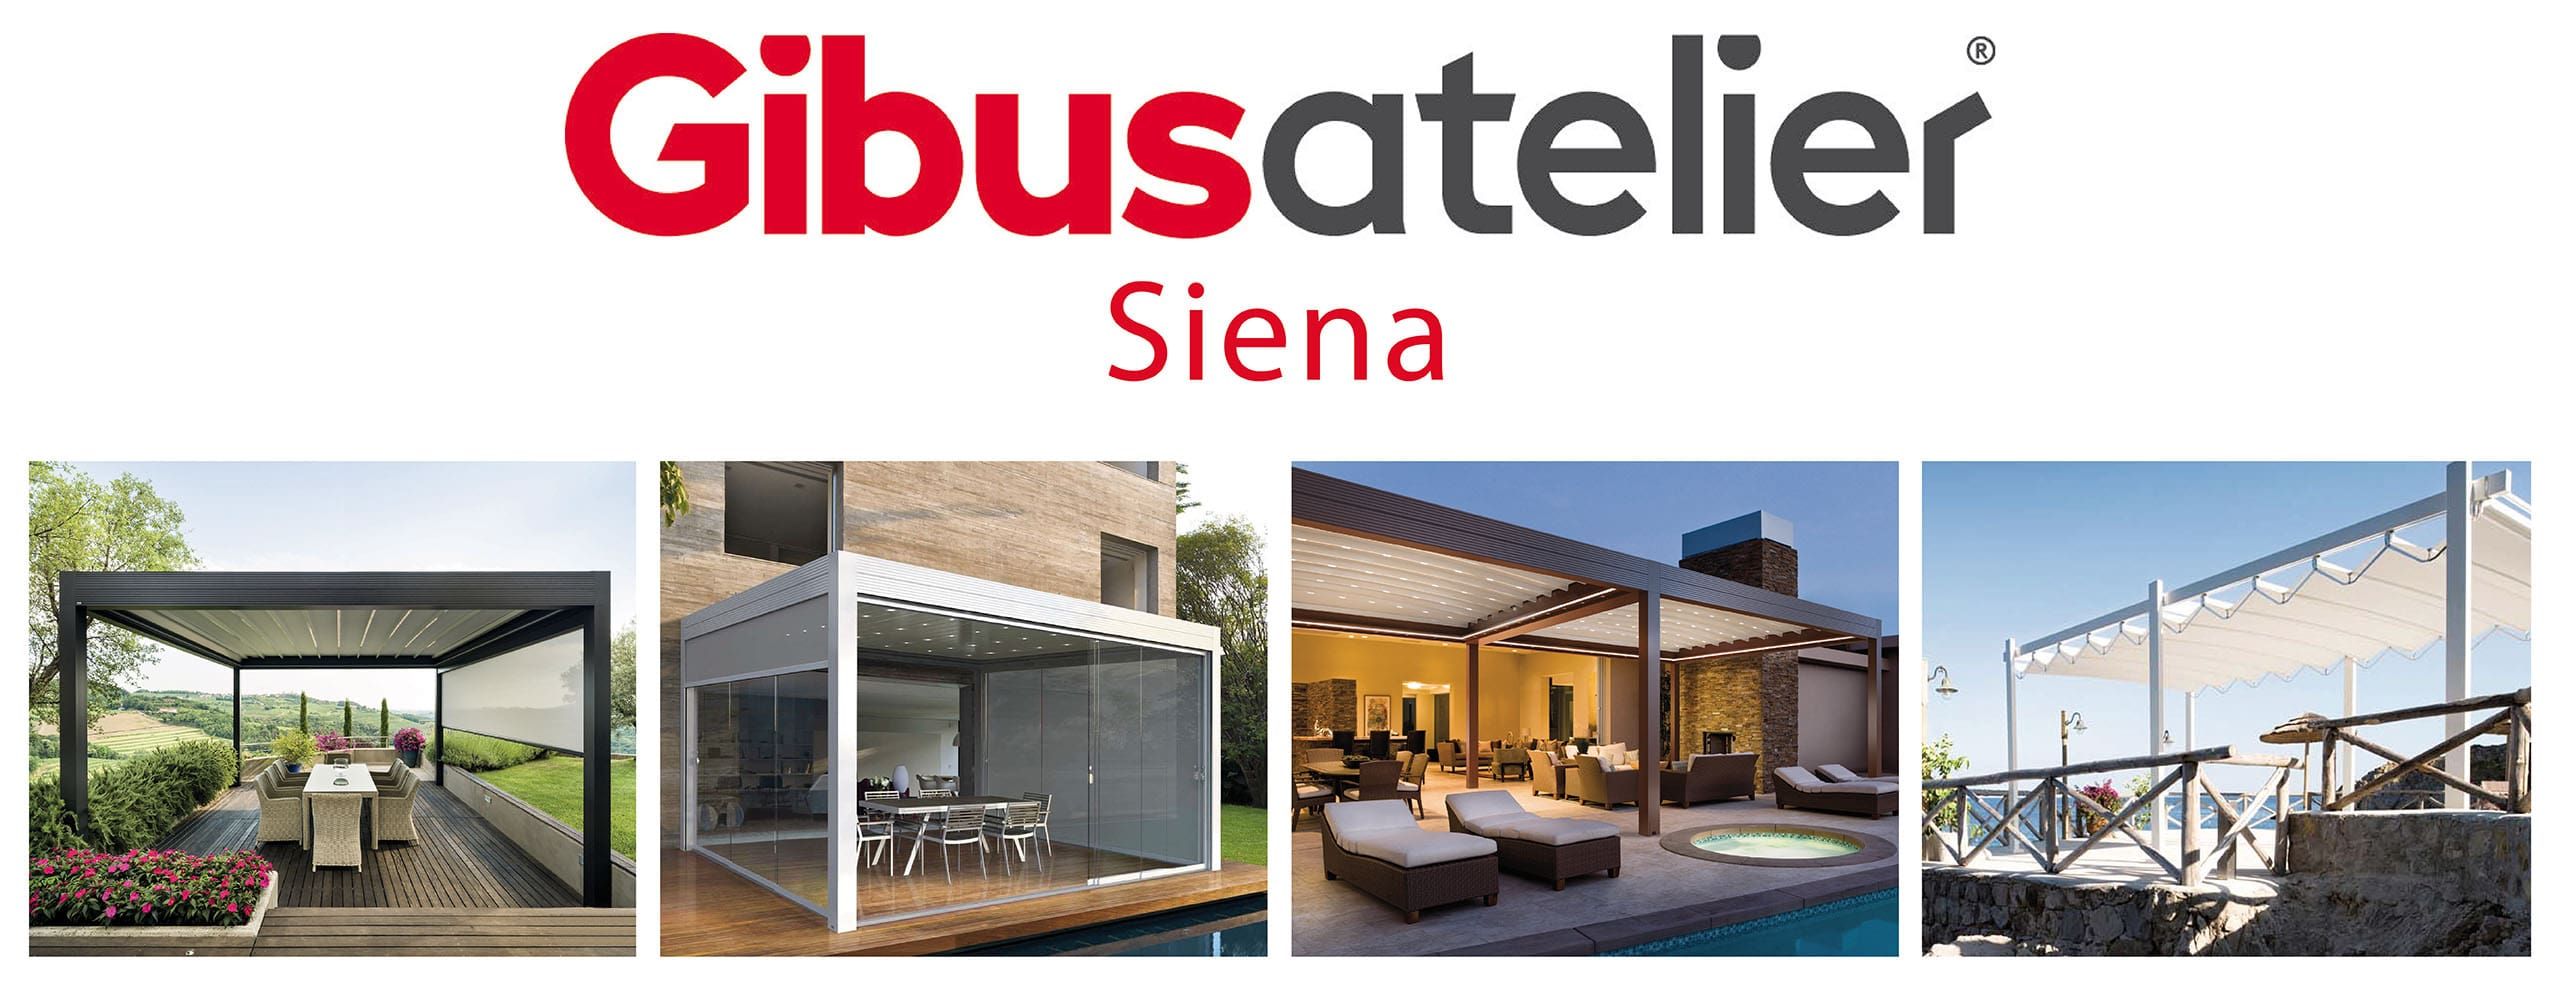 Gibus Atelier Siena